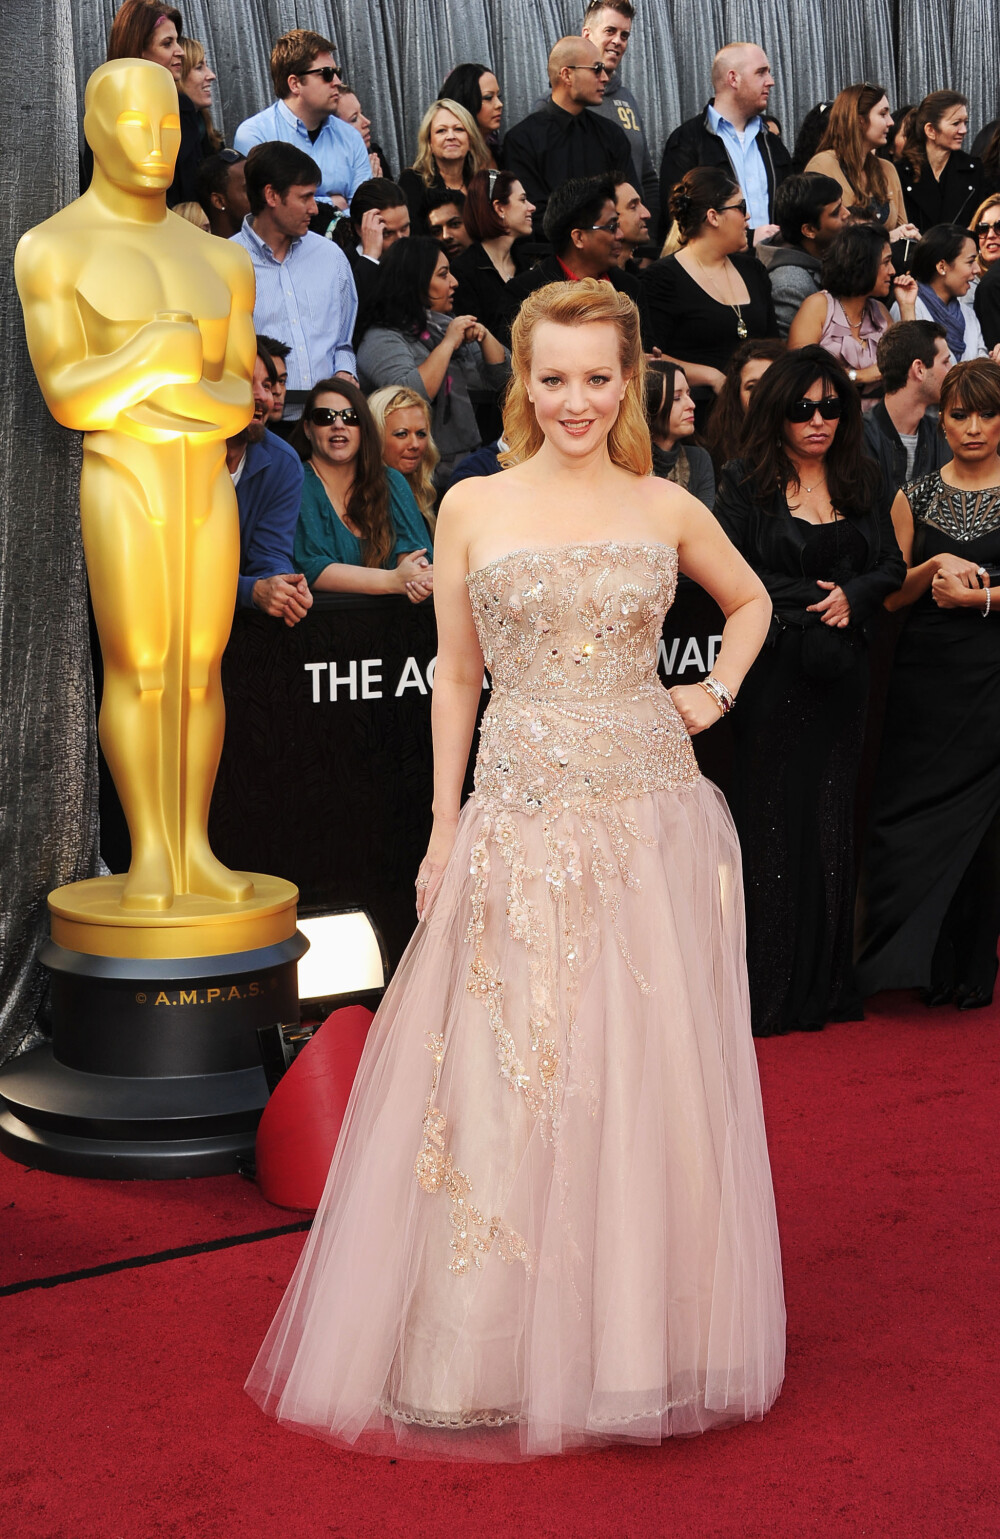 Defilarea starurilor pe covorul rosu, la Oscar 2012. Ce rochii au purtat vedetele. FOTO - Imaginea 11